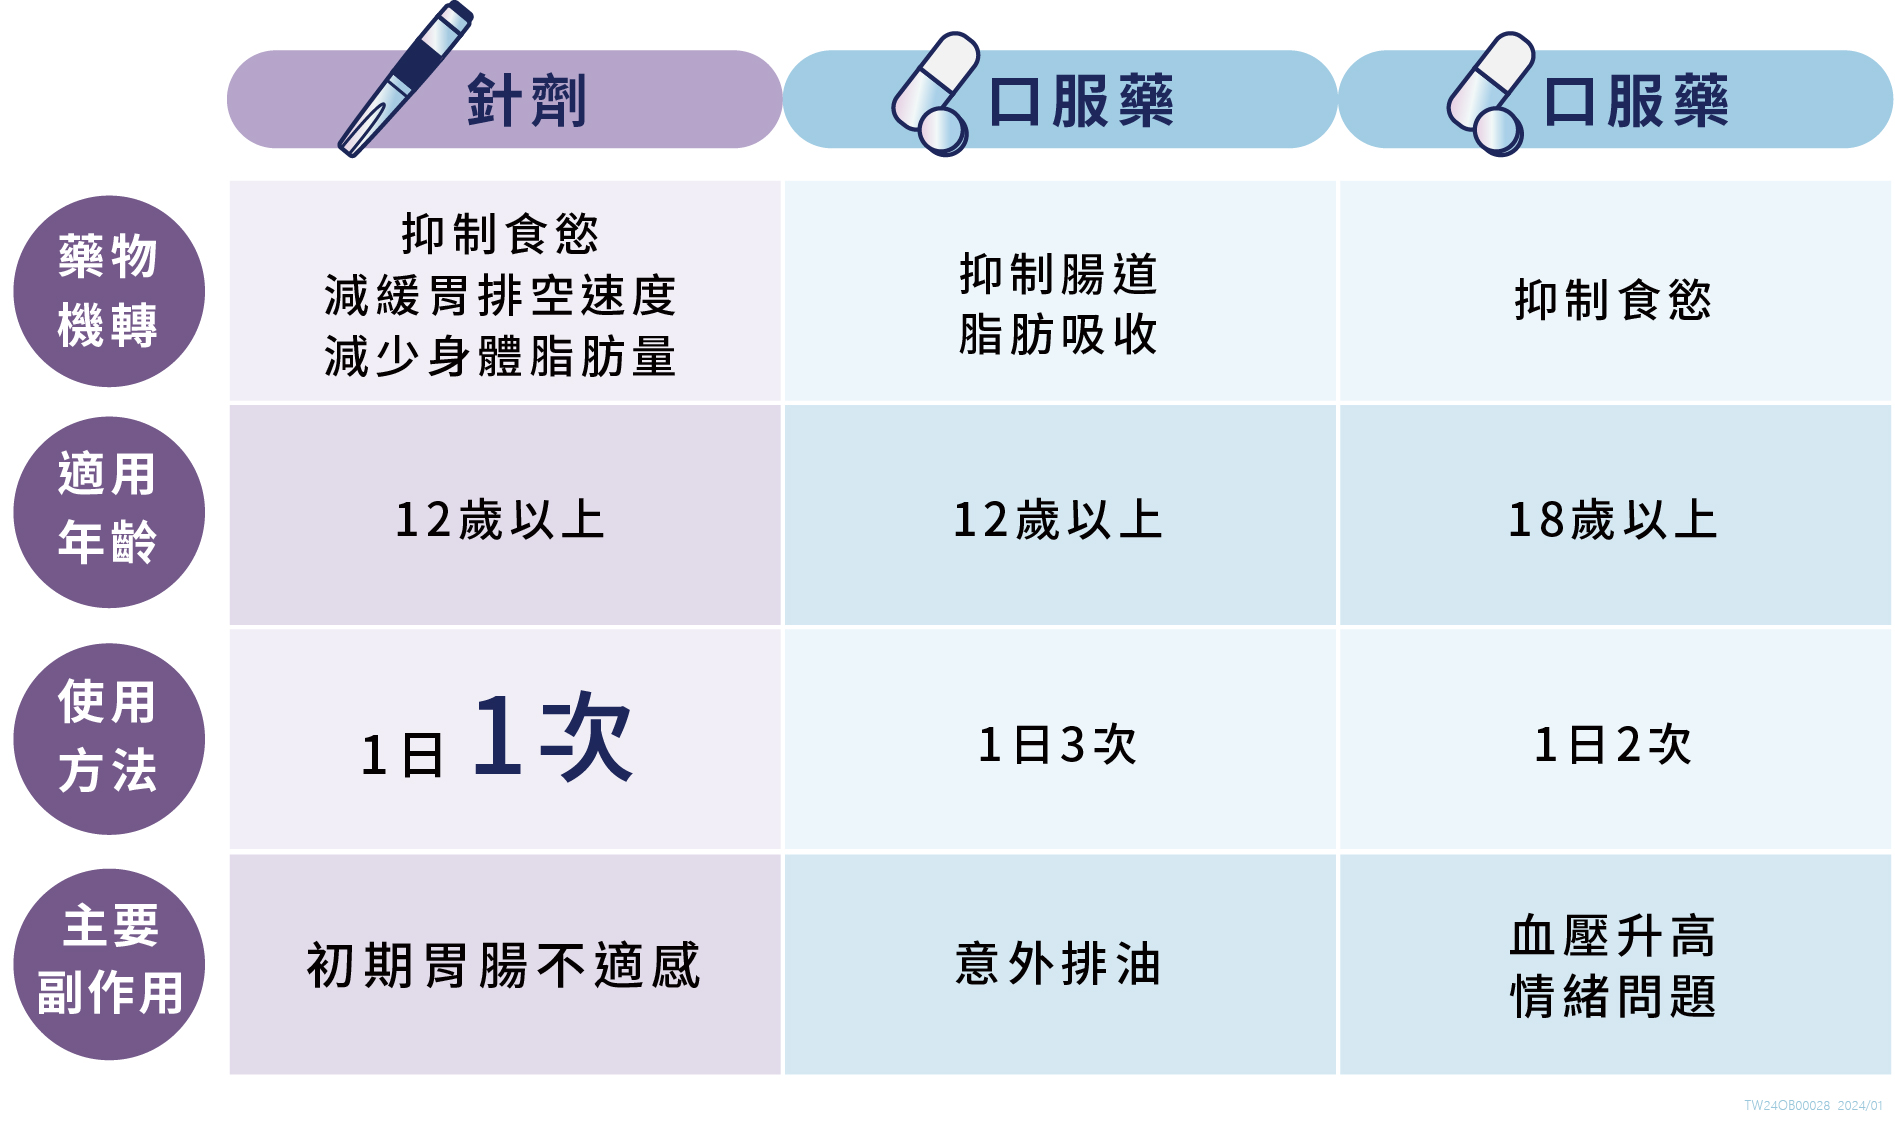 目前台灣已核准上市的體重管理輔助藥物有三種